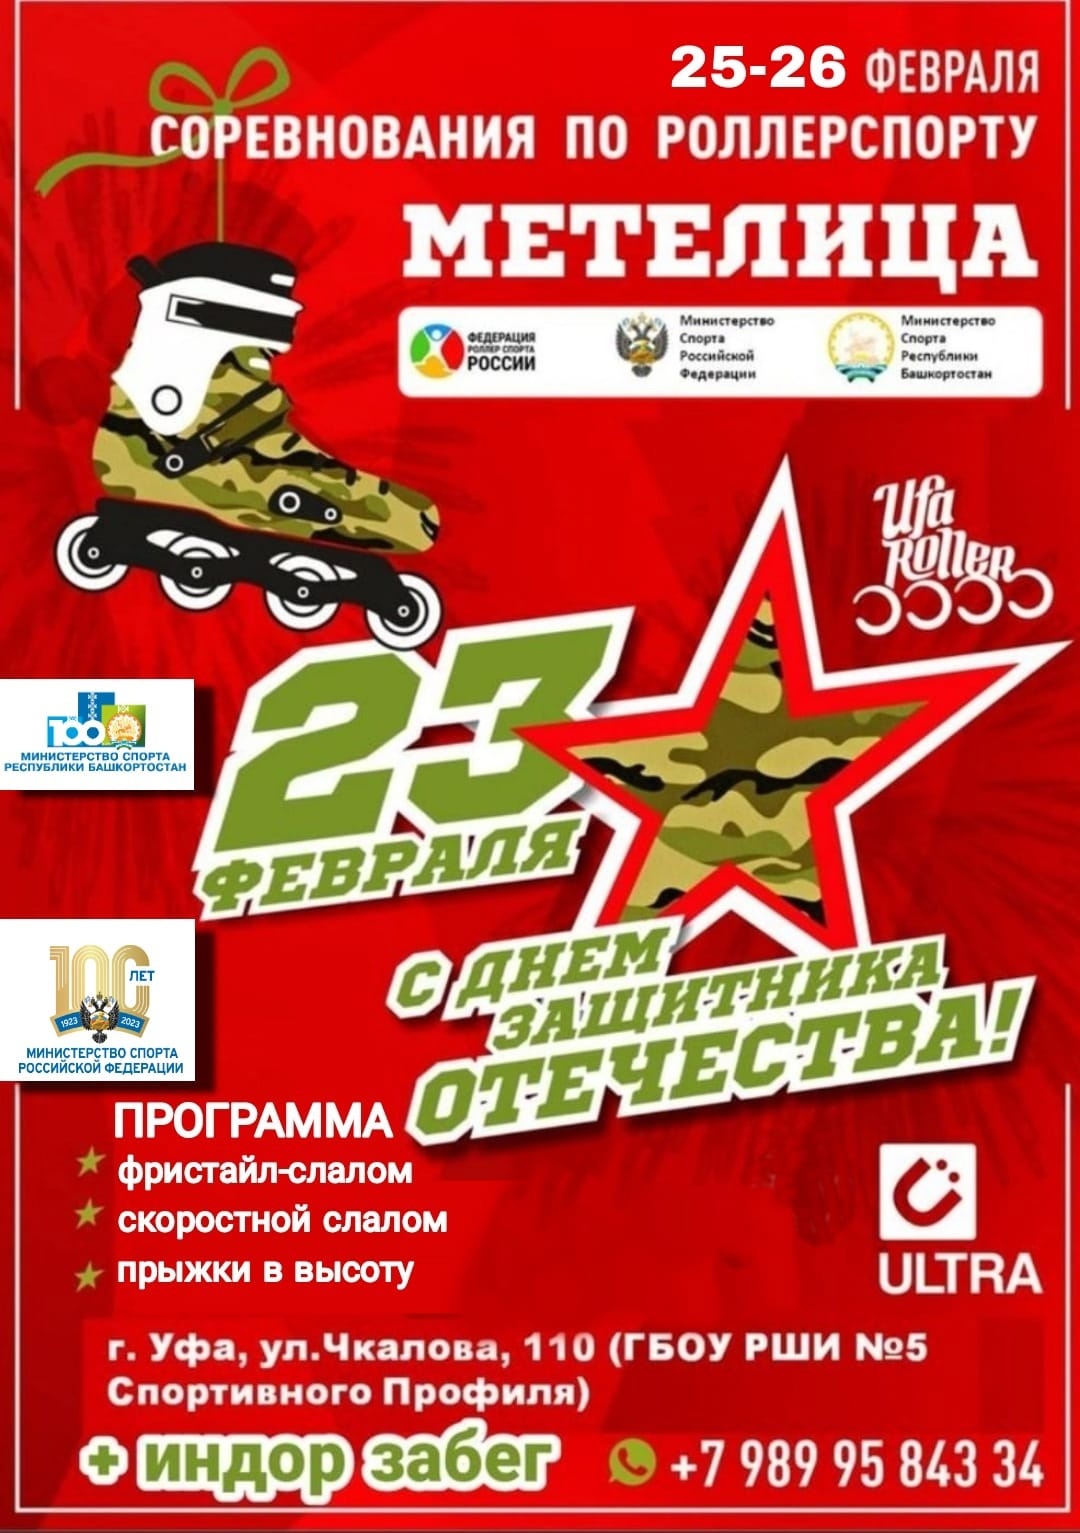 «МЕТЕЛИЦА 2023 — День защитника отечества» / Уфа / 24-27 февраля